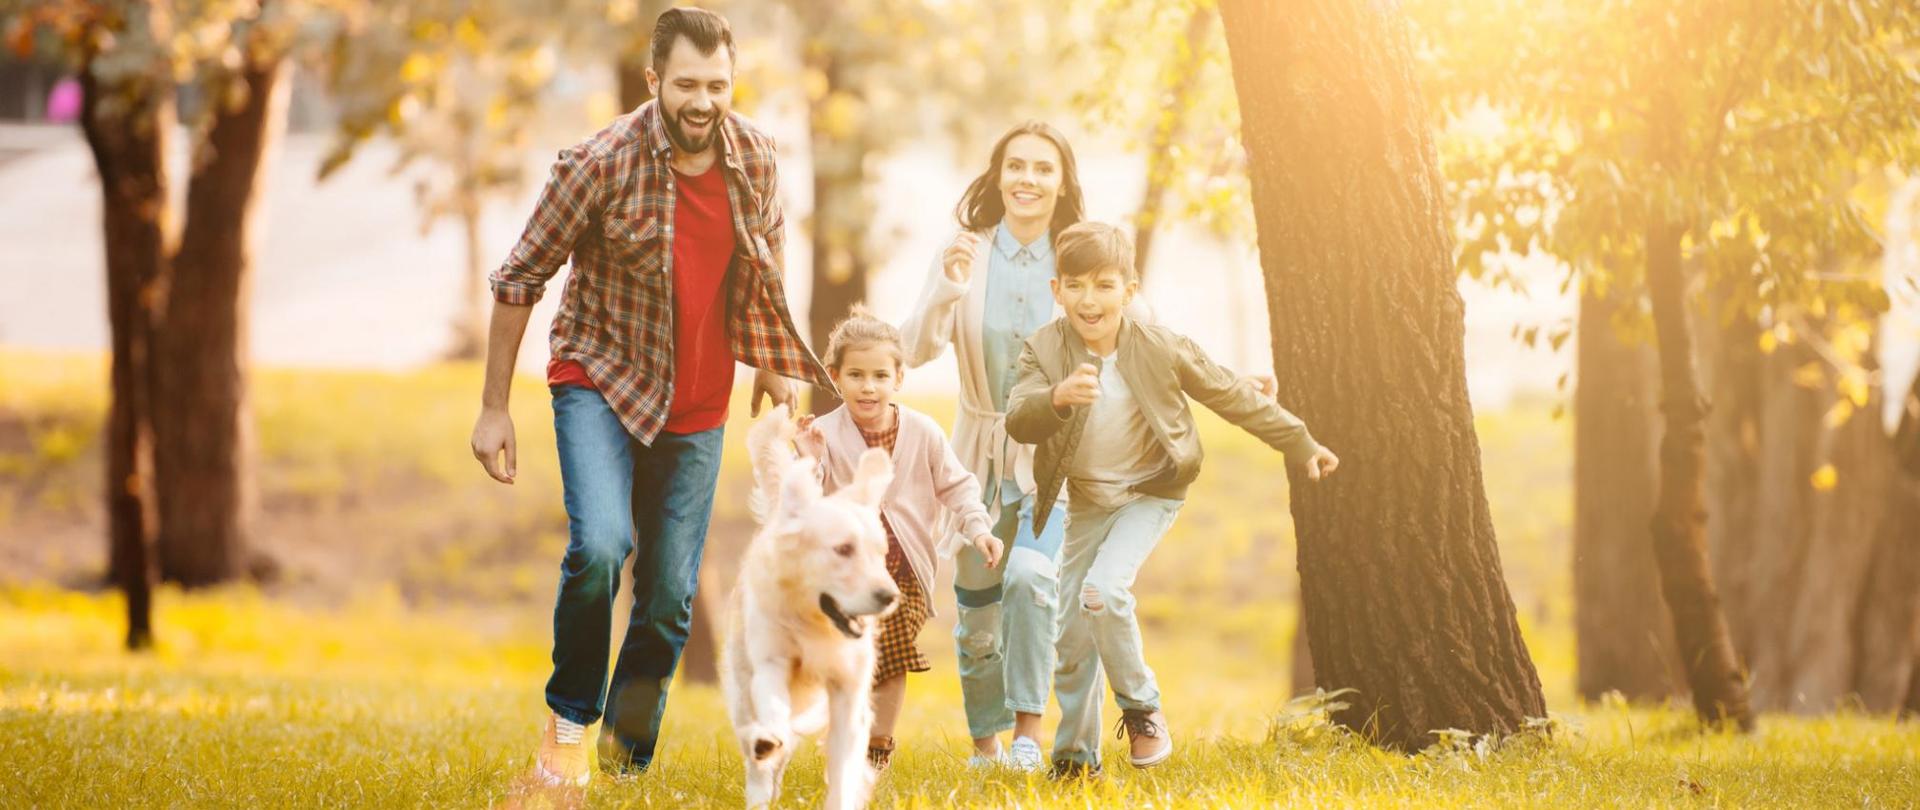 Na zdjęciu jest biegnąca rodzina wraz z psem w parku.